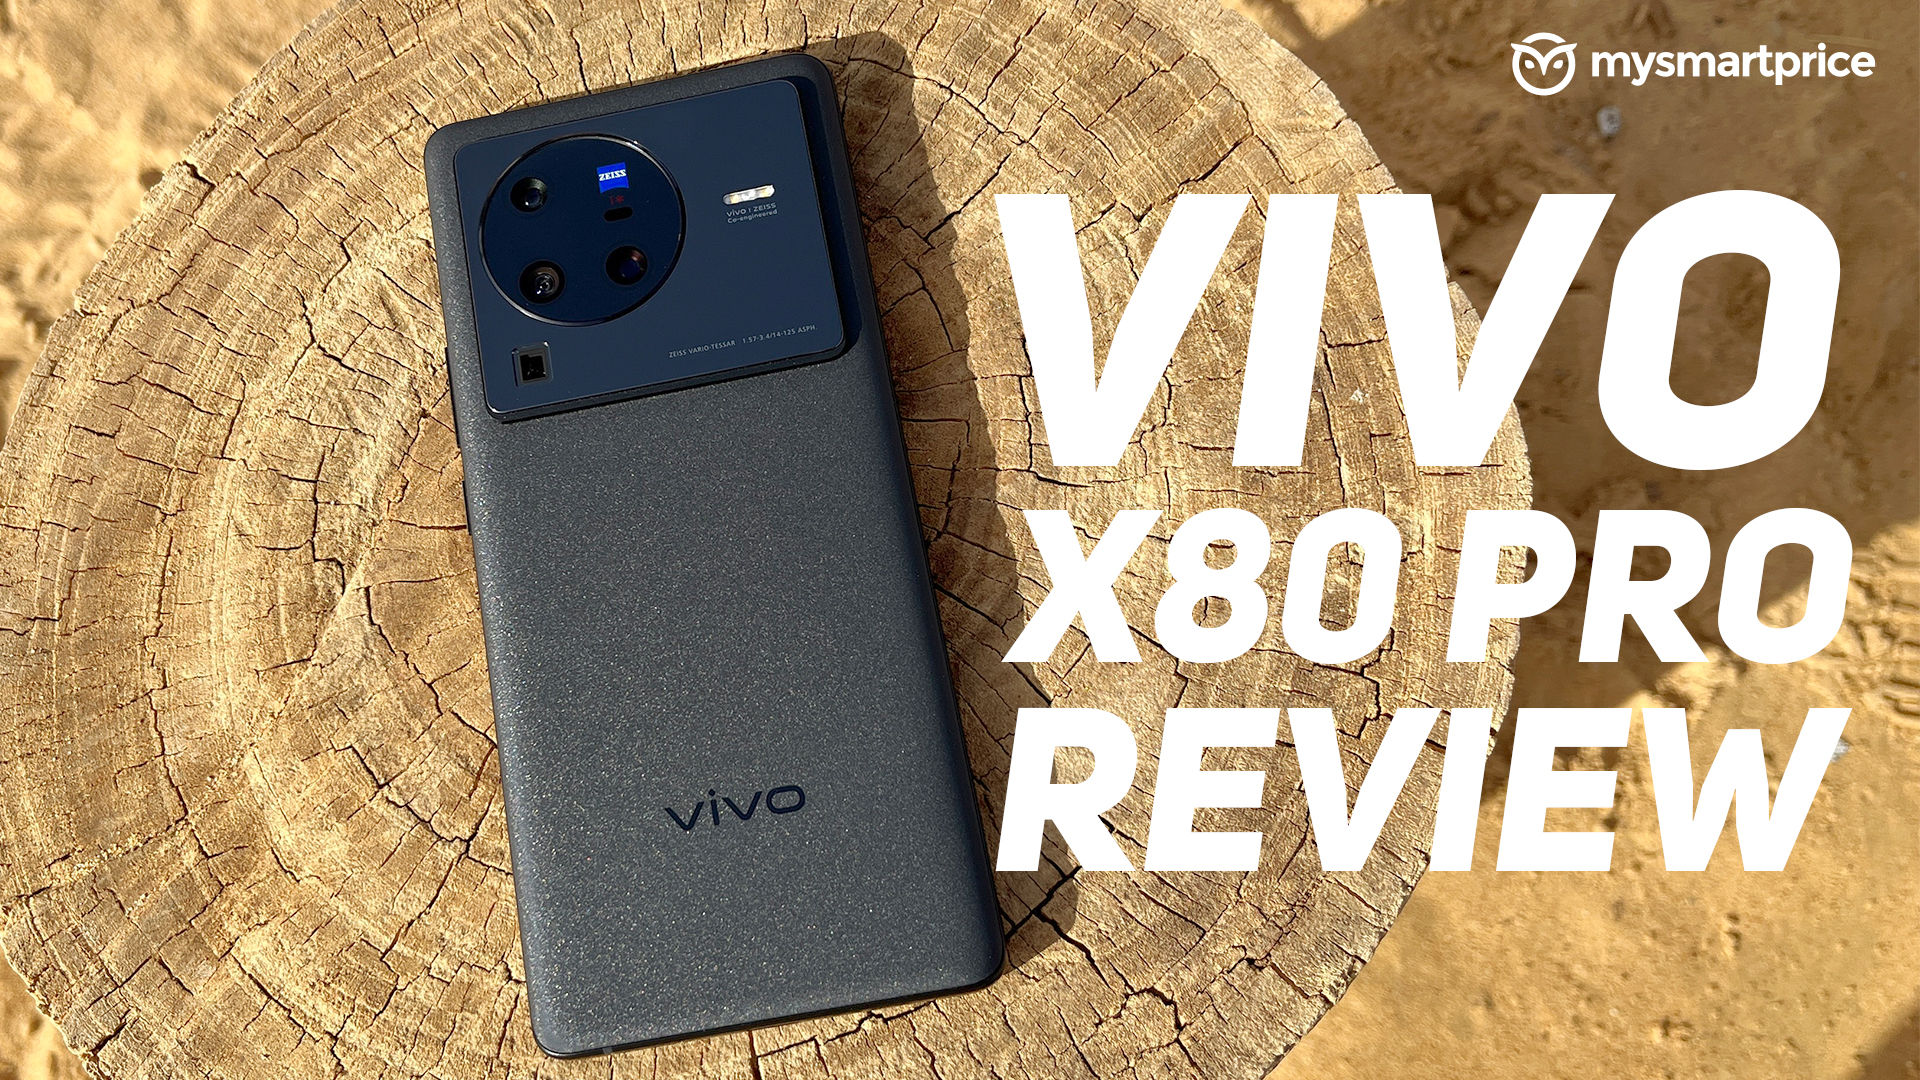 Vivo X80 Pro